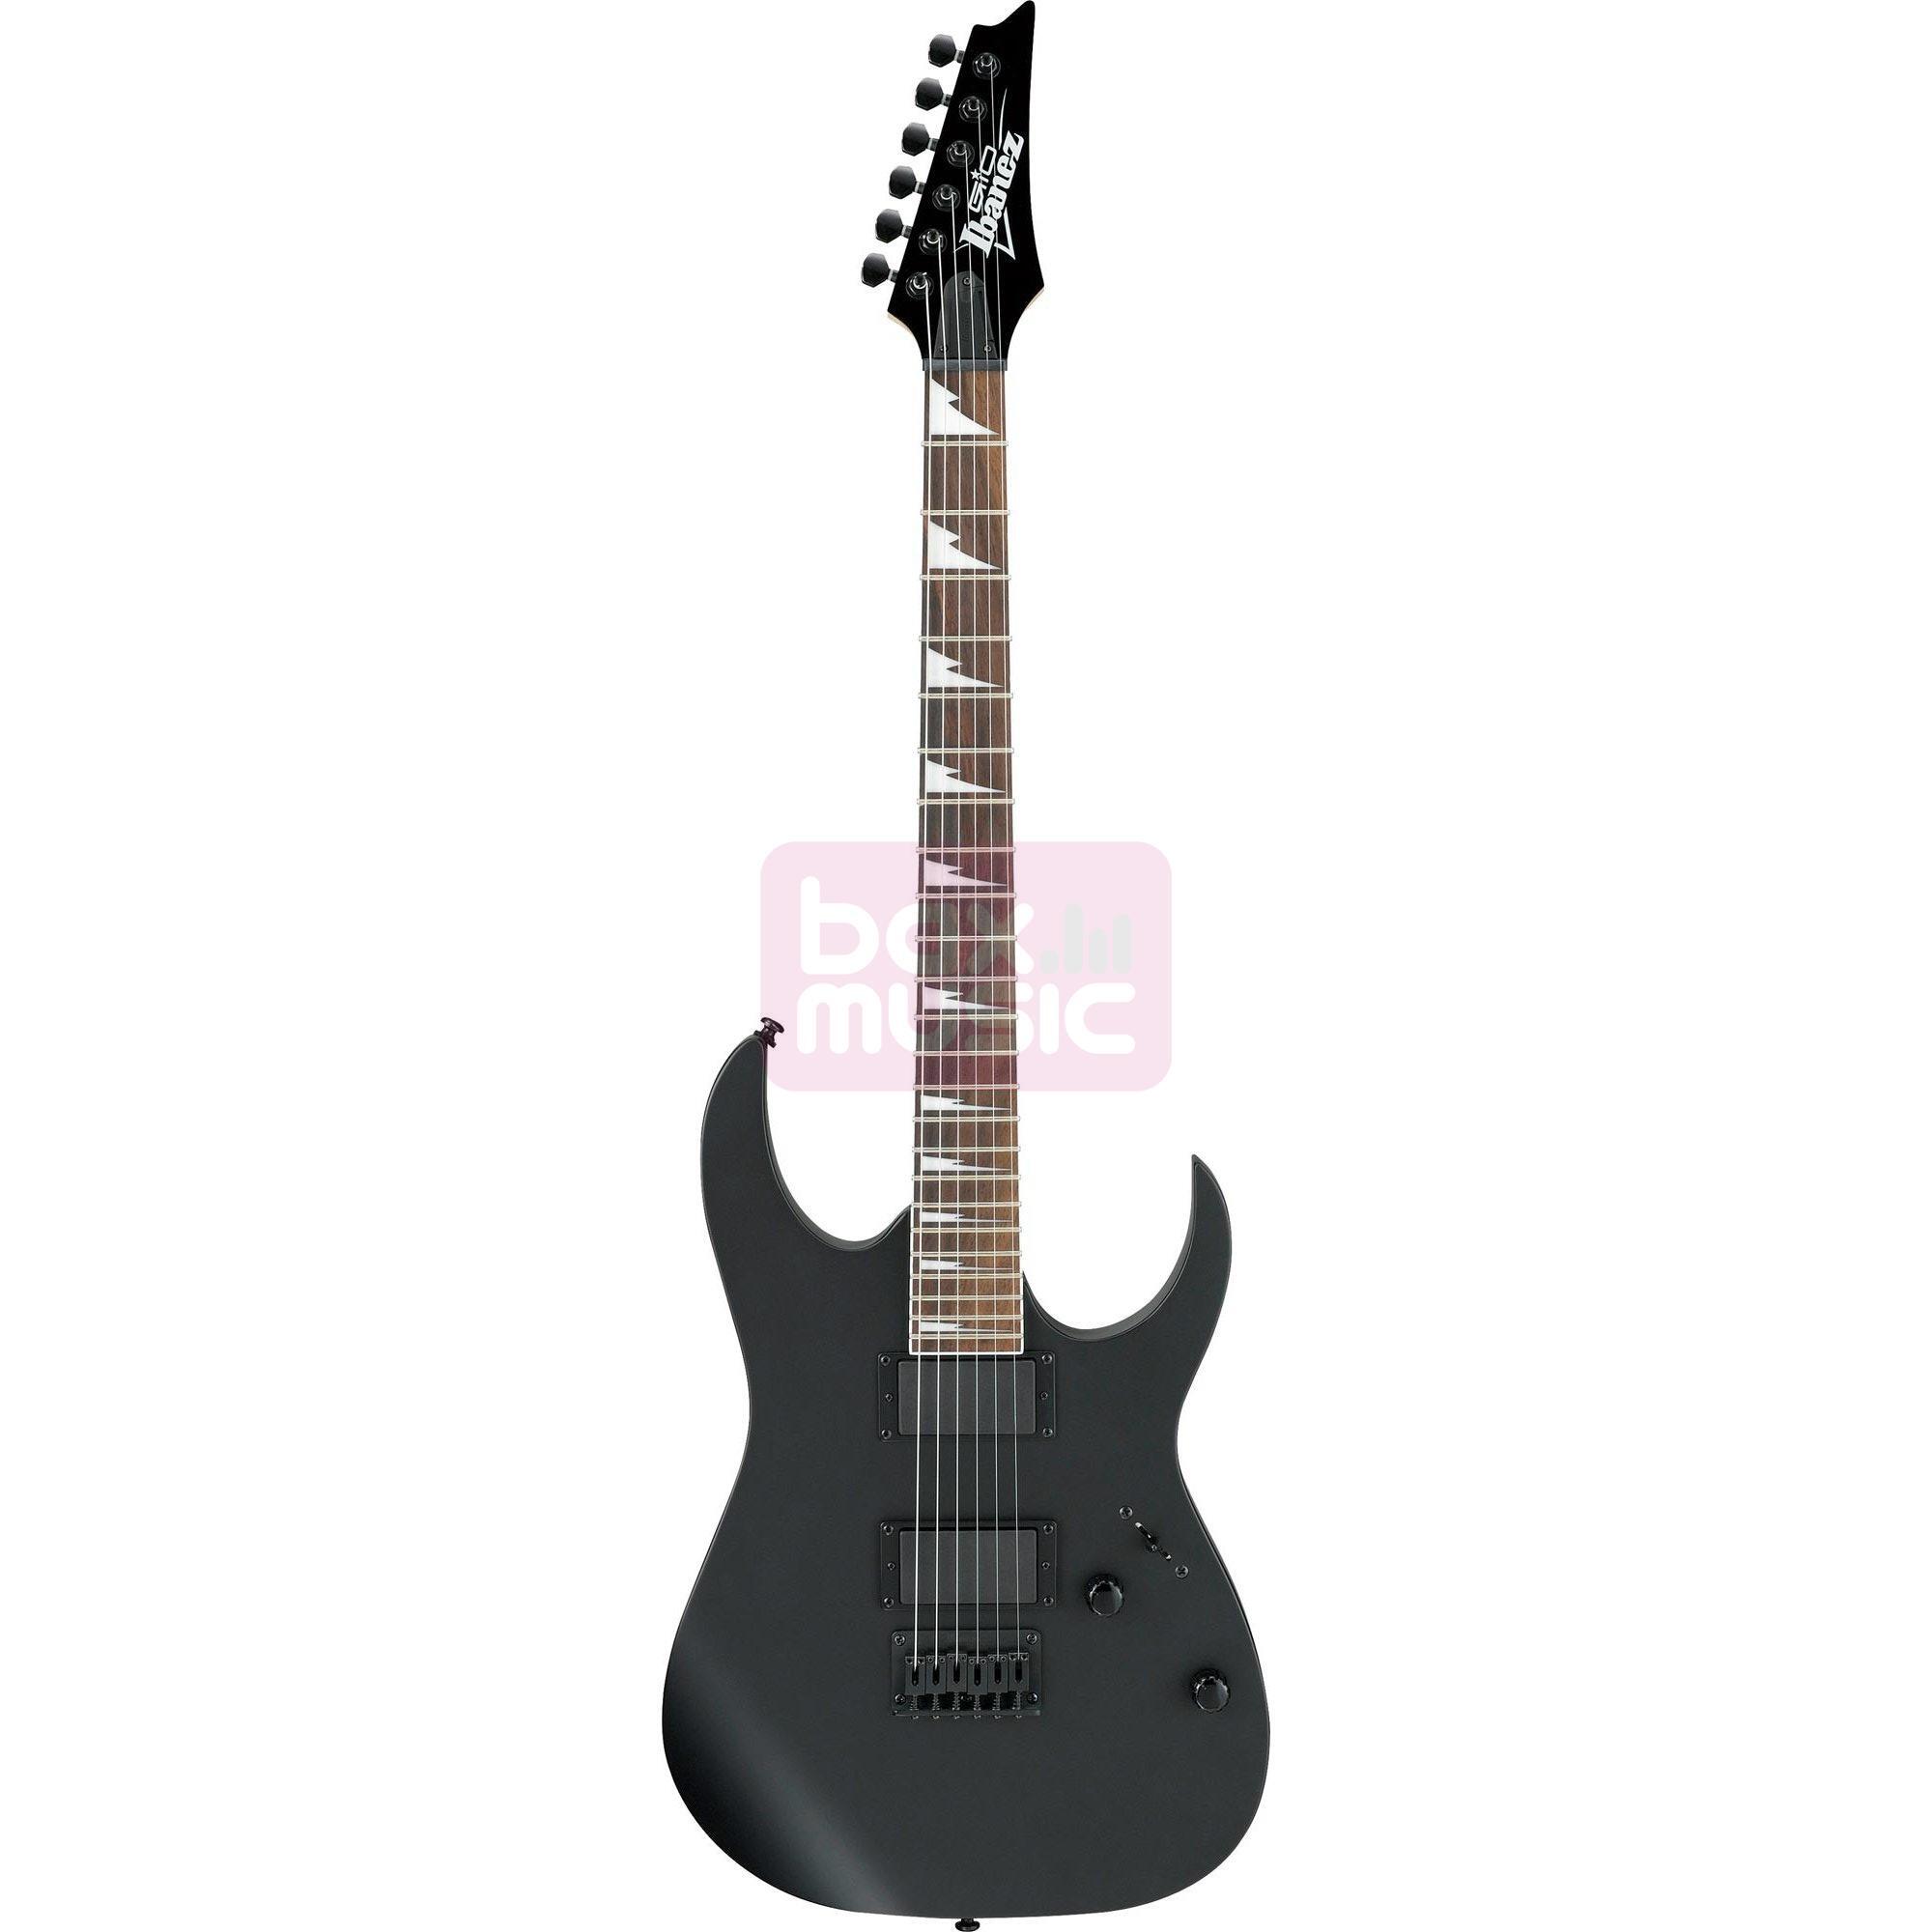 Ibanez Gio GRG 121 DX Black Flat elektrische gitaar